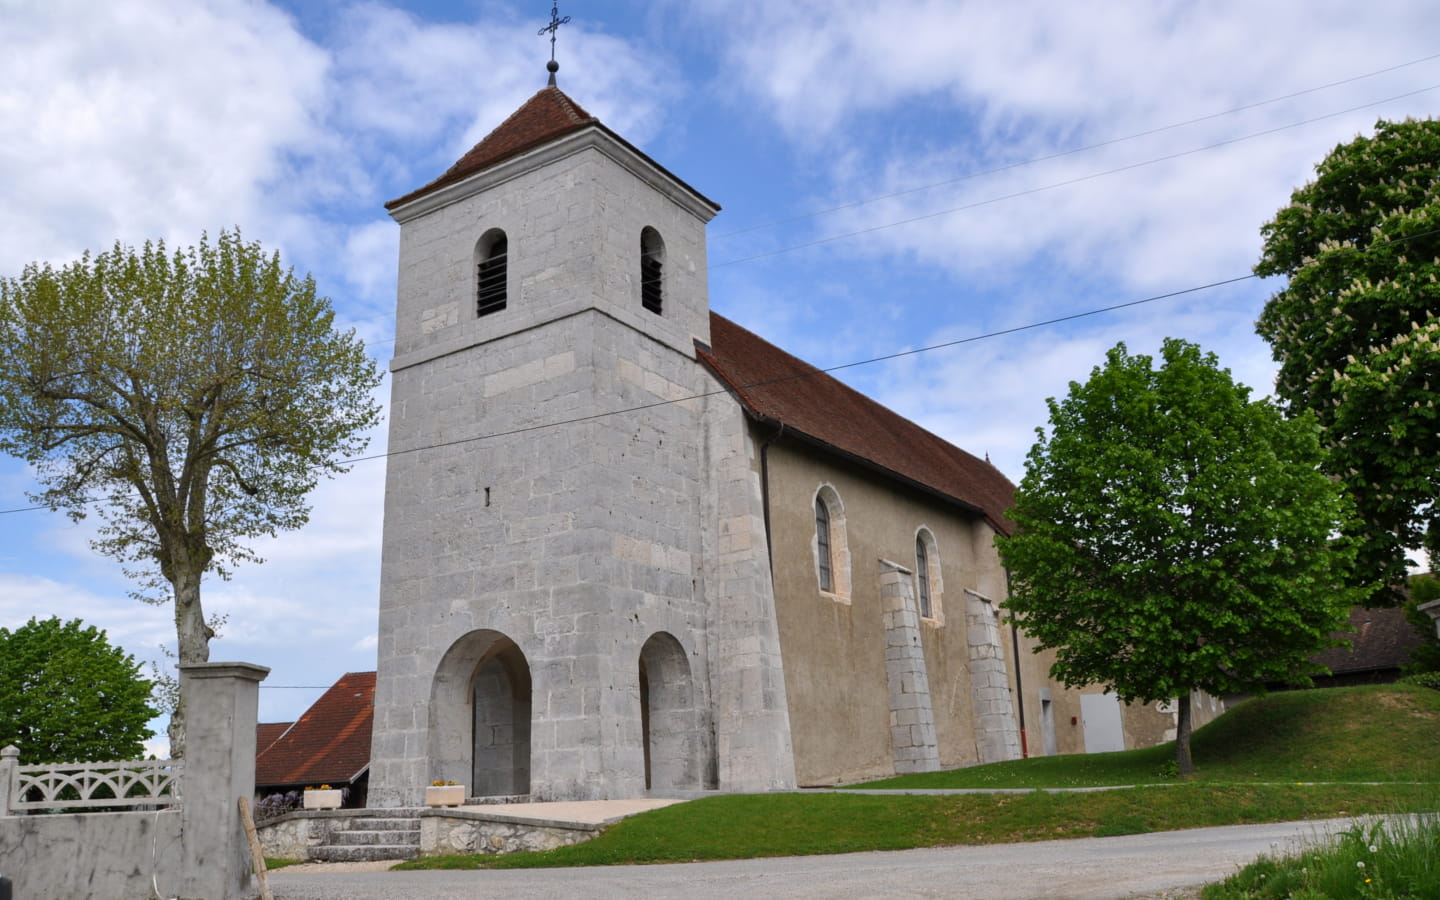 Eglise de Corbonod - Croix près de l'église à Corbonod